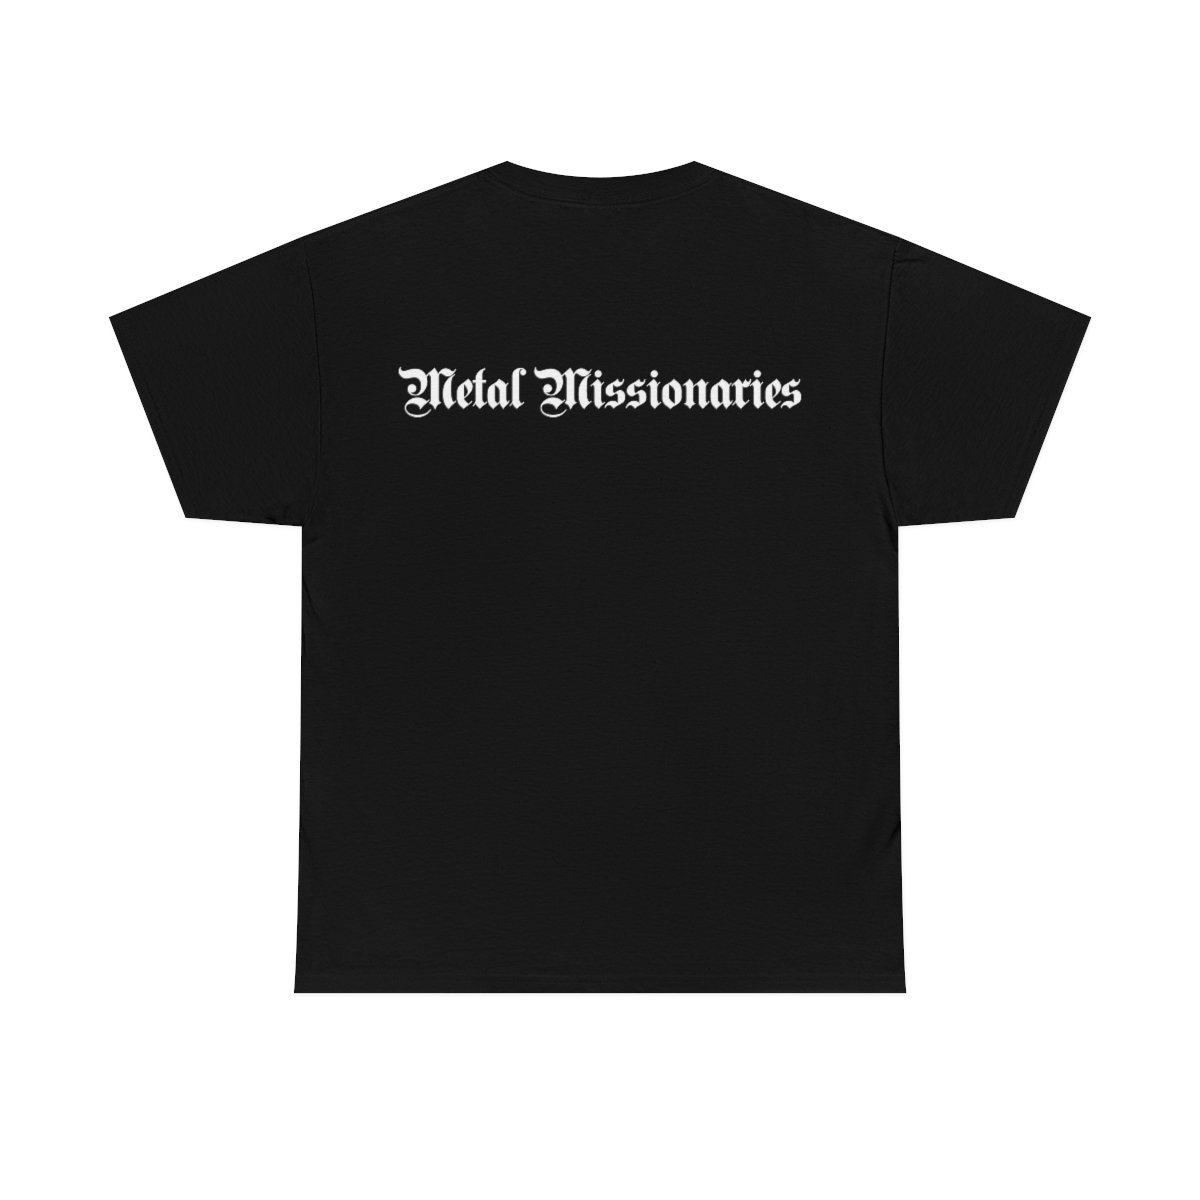 Bloodgood Metal Missionaries Short Sleeve Tshirt D